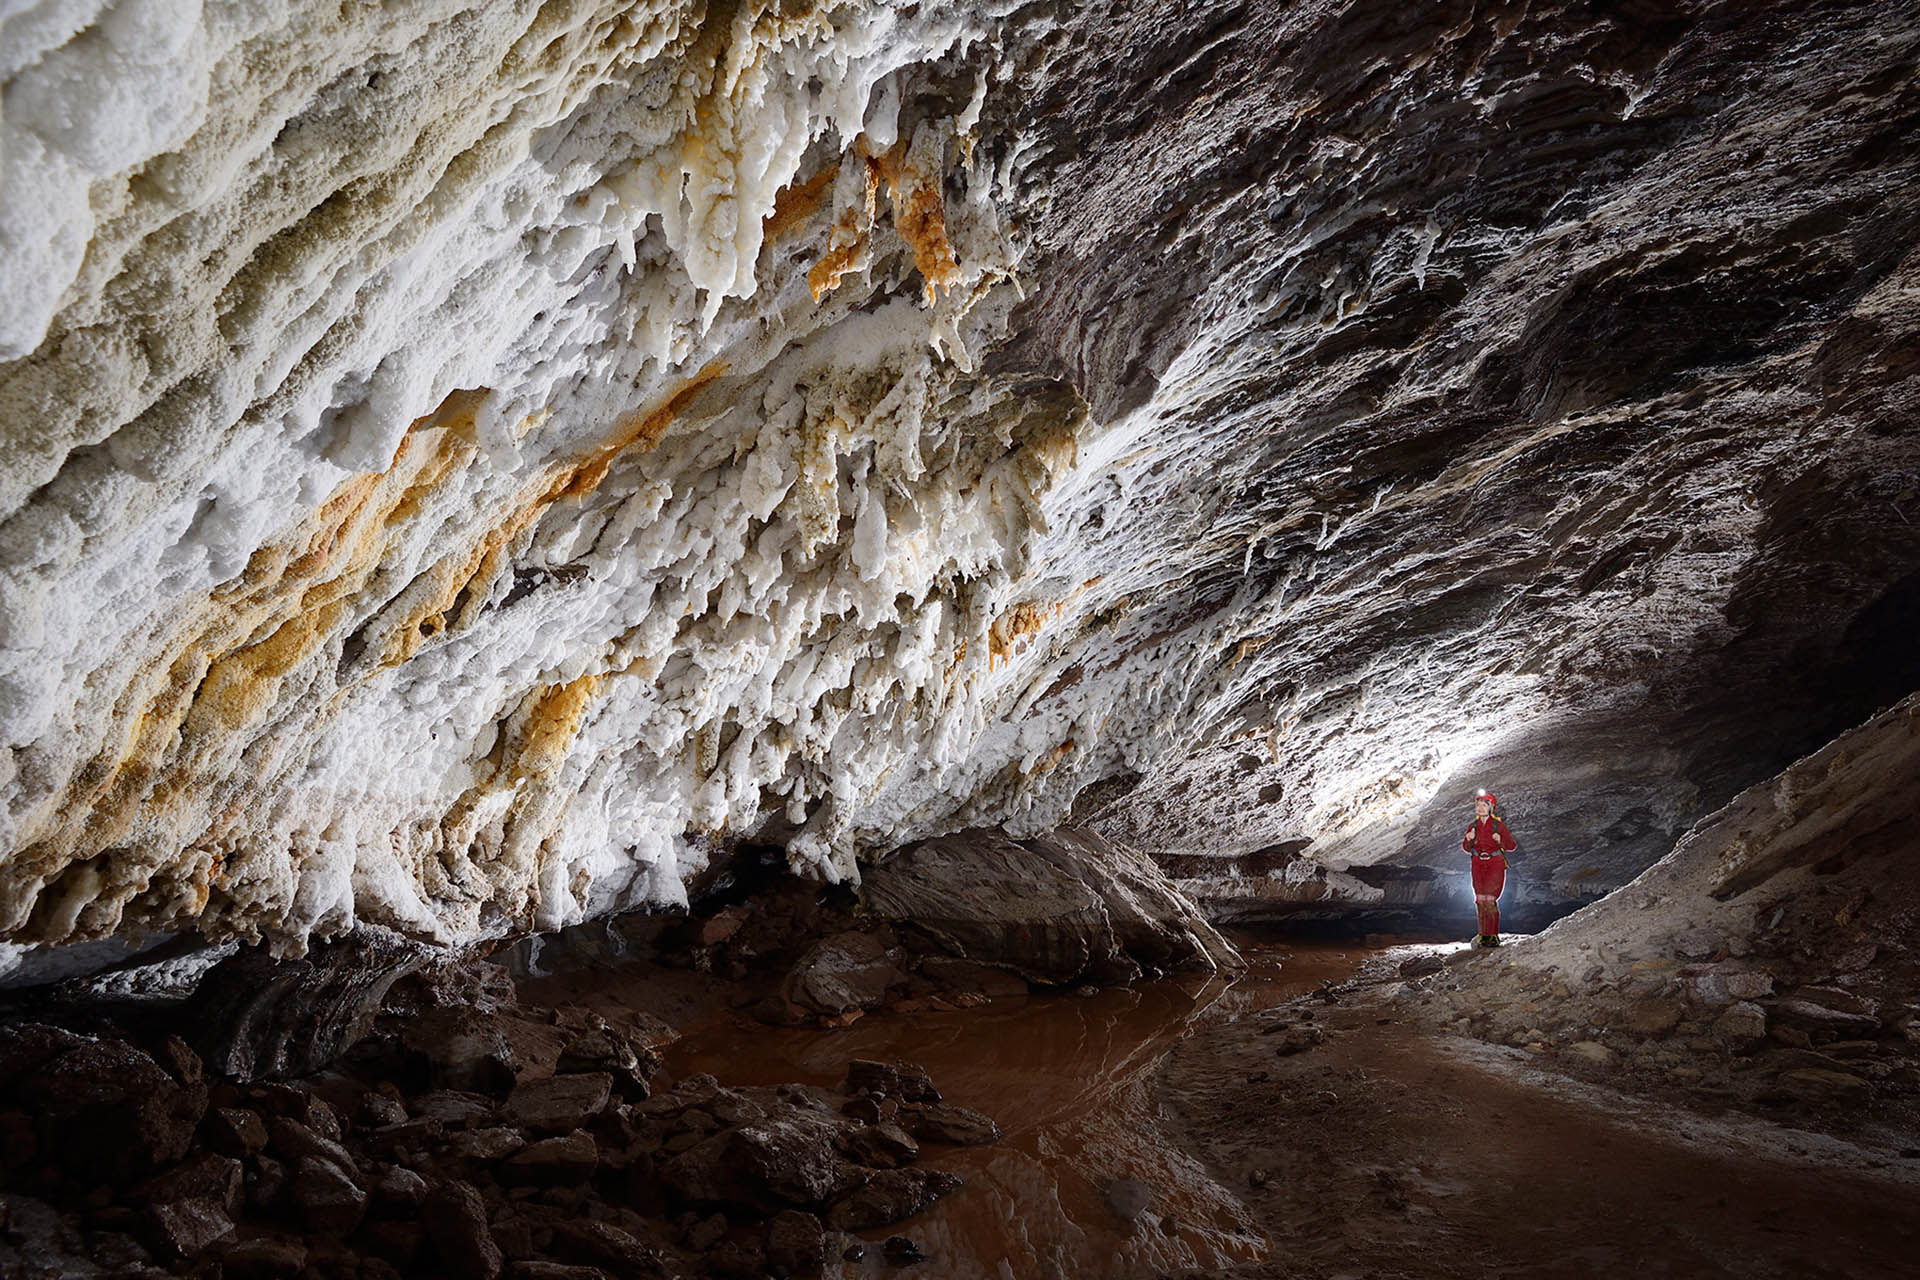 Qeshm Salt Cave: Iran's Hidden Subterranean Wonder